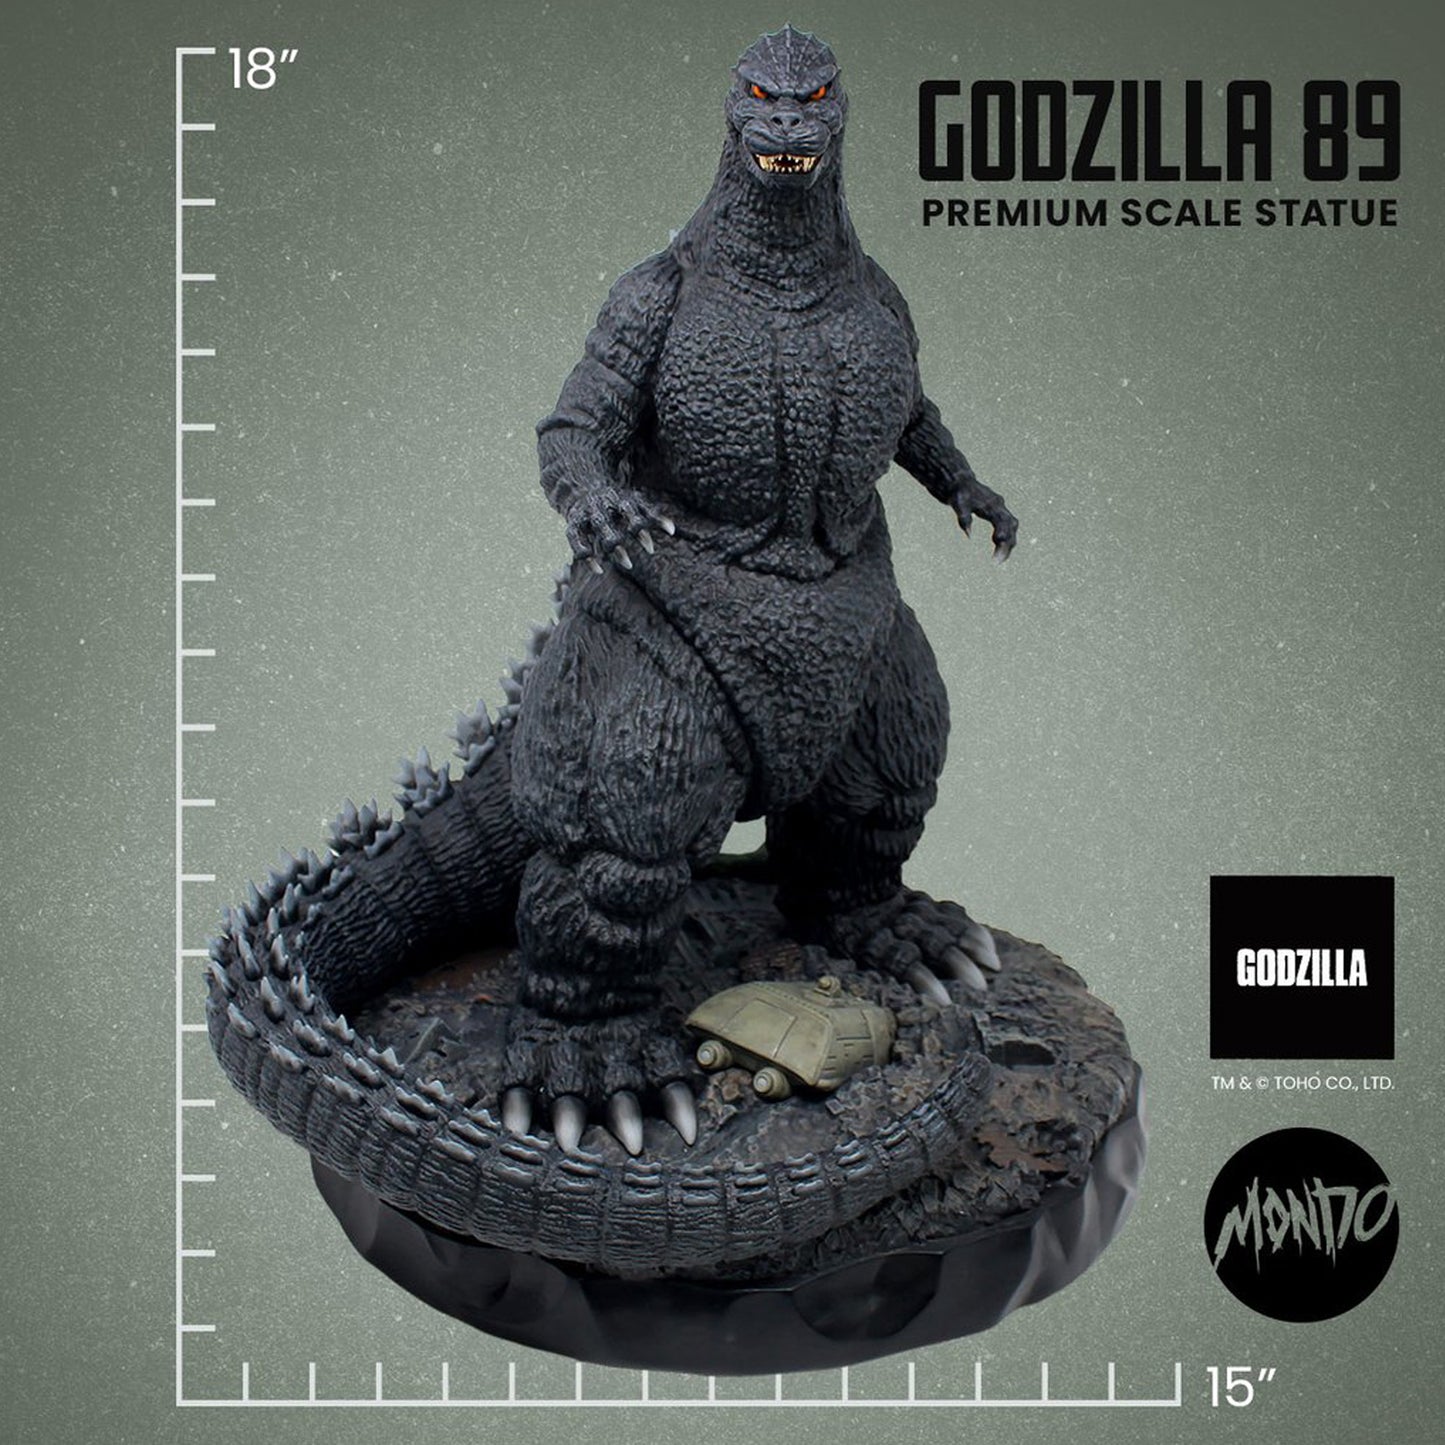 Mondo - Godzilla 89 Premium Scale Statue Limited Edition